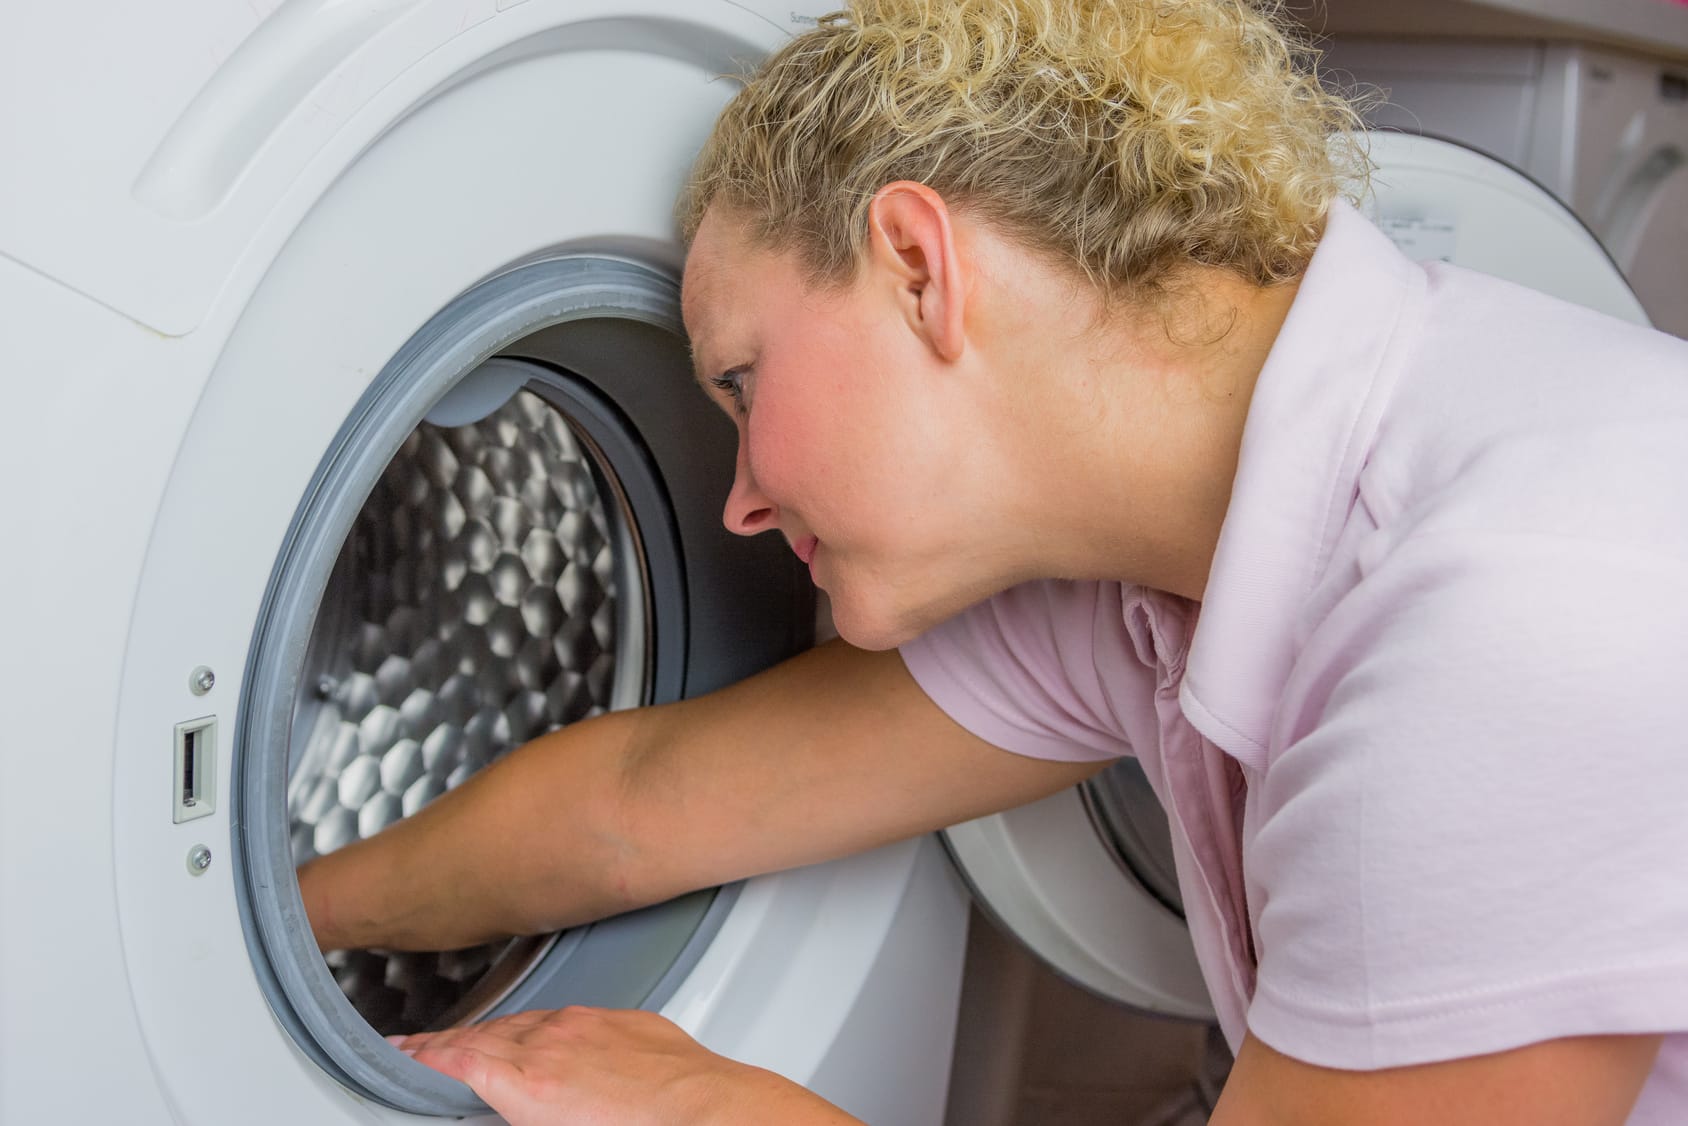 Schimmel in der Waschmaschine – 9 Tipps zur schnellen Reinigung und Vorbeugung